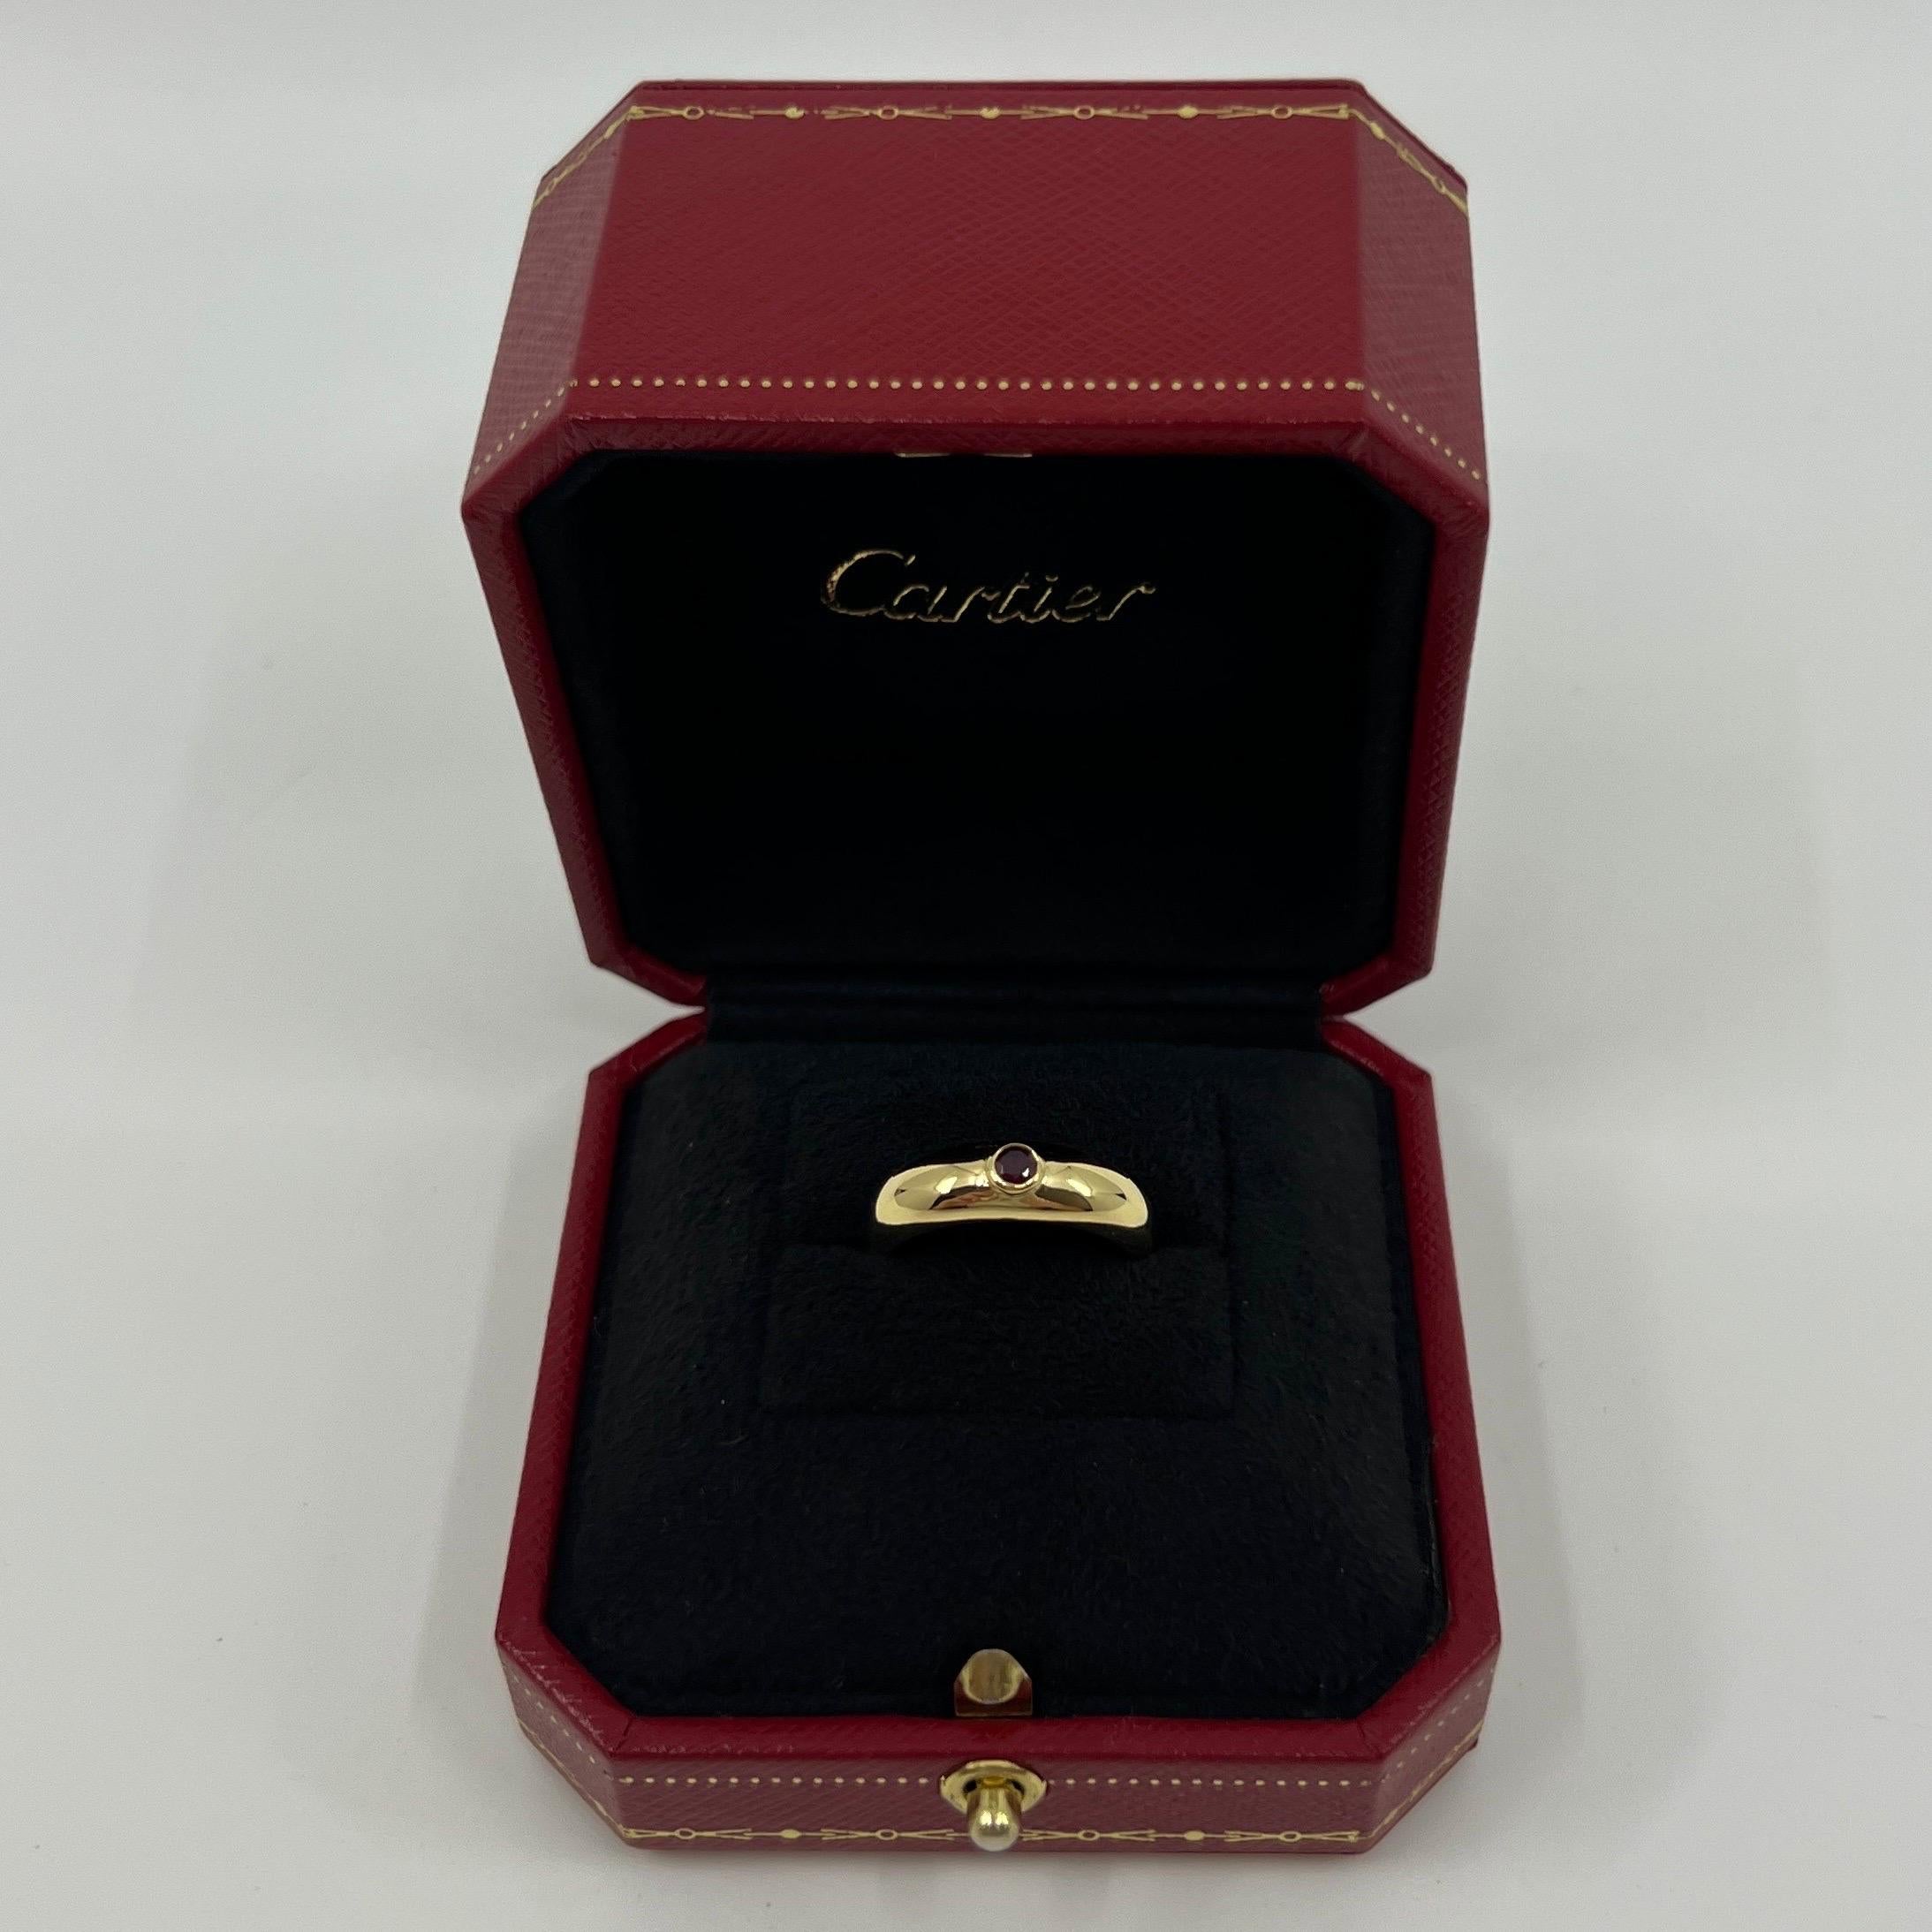 Vintage Cartier Round Cut Red Ruby Signet Style 18k Yellow Gold Domed Ring.

Superbe bague Cartier en or jaune sertie d'un magnifique rubis naturel de 3 mm de diamètre à taille ronde, d'une belle couleur rouge profond et d'une excellente taille.
Les